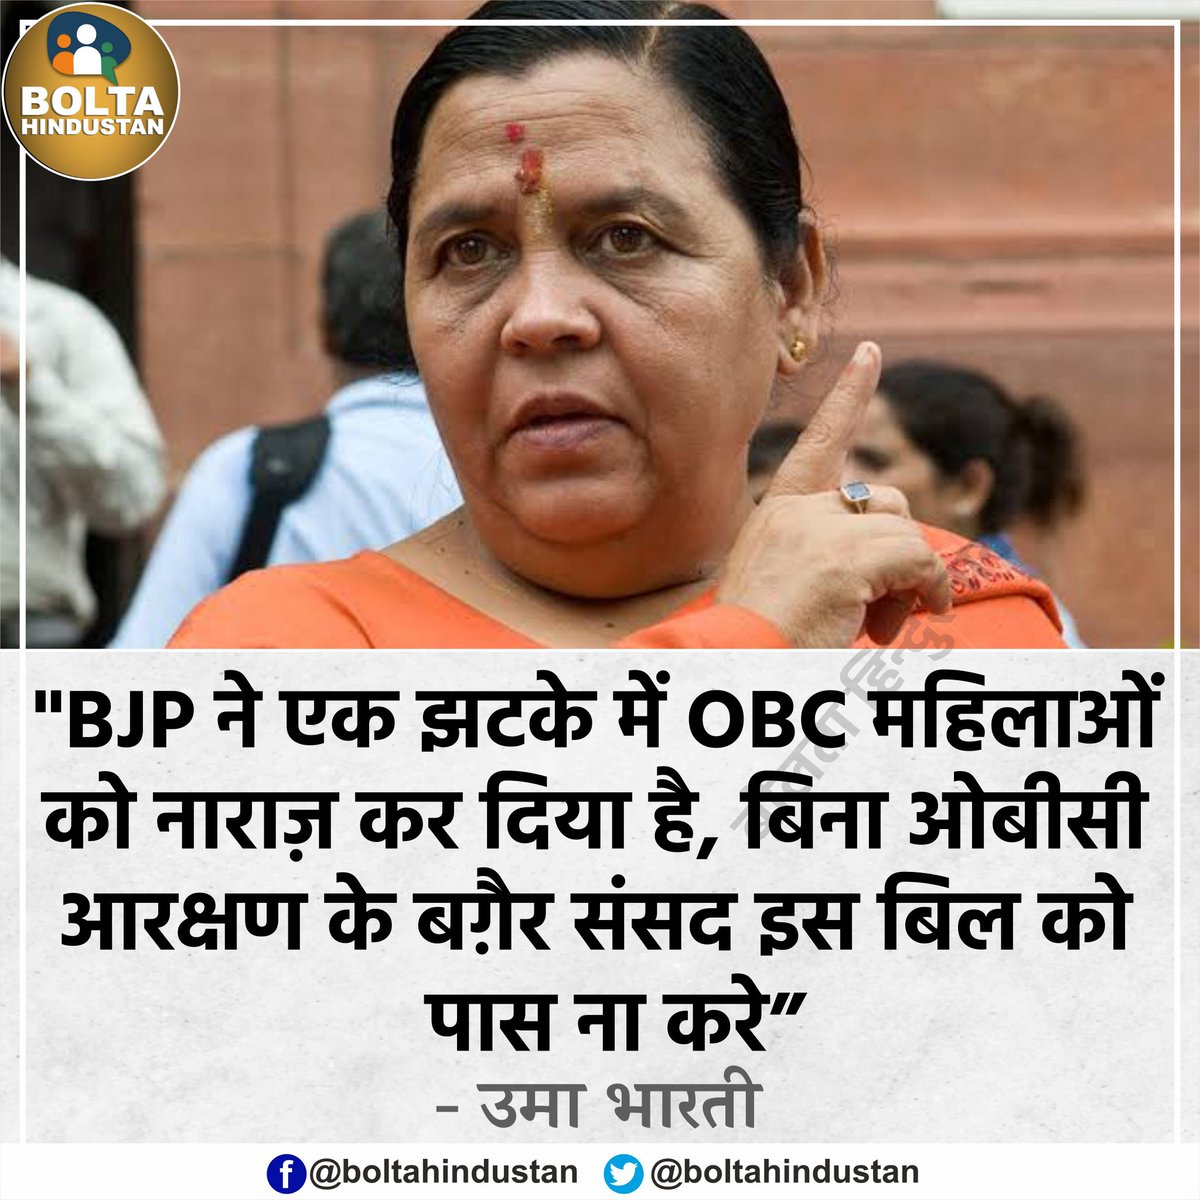 BJP ने एक झटके में OBC महिलाओं को नाराज़ कर दिया है' : उमा भारती

#UmaBharti 
#WomenReservationBill